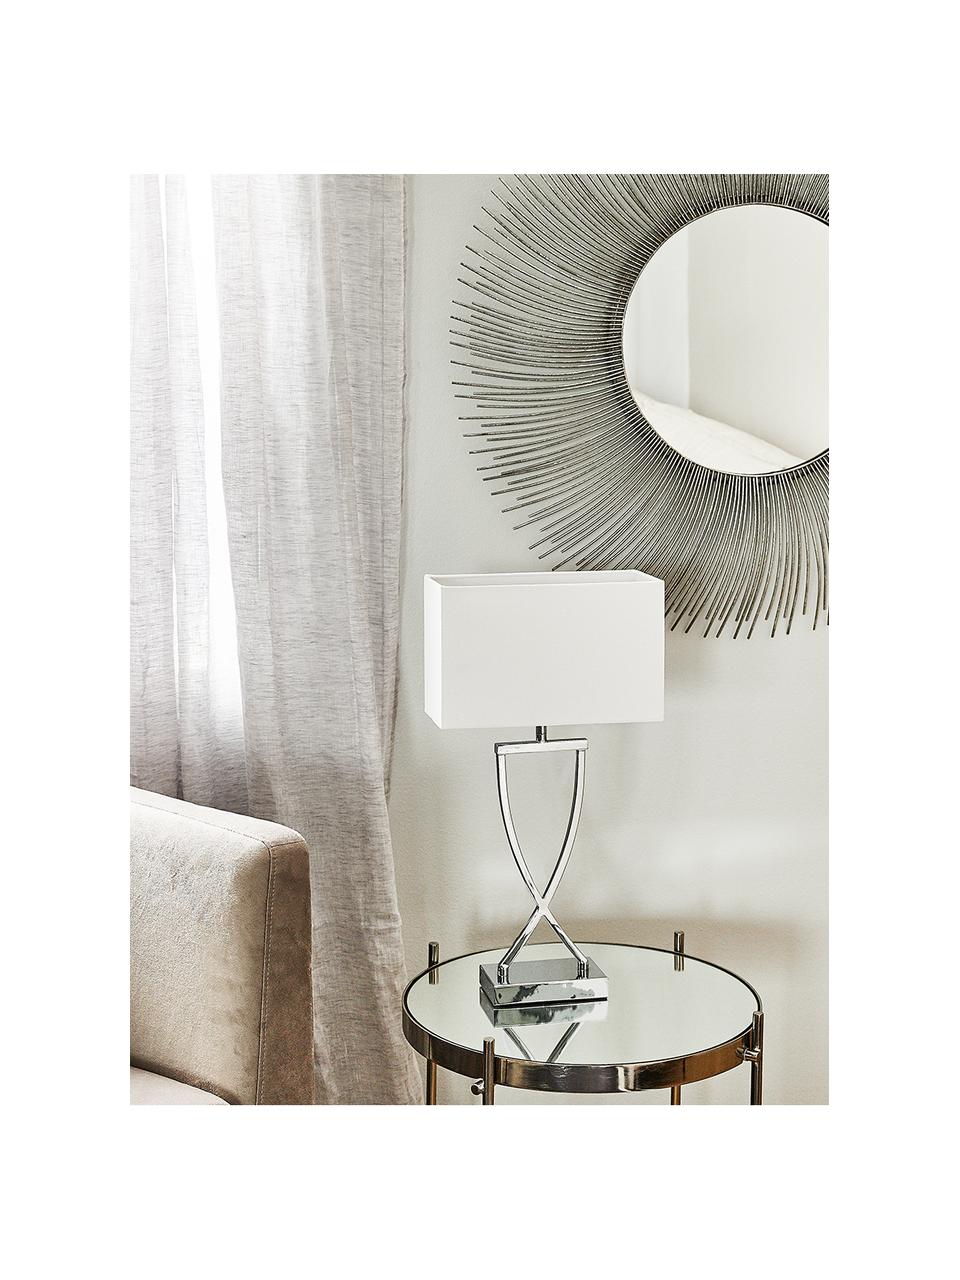 Grande lampe à poser classique argentée Vanessa, Chrome, blanc, larg. 27 x haut. 52 cm